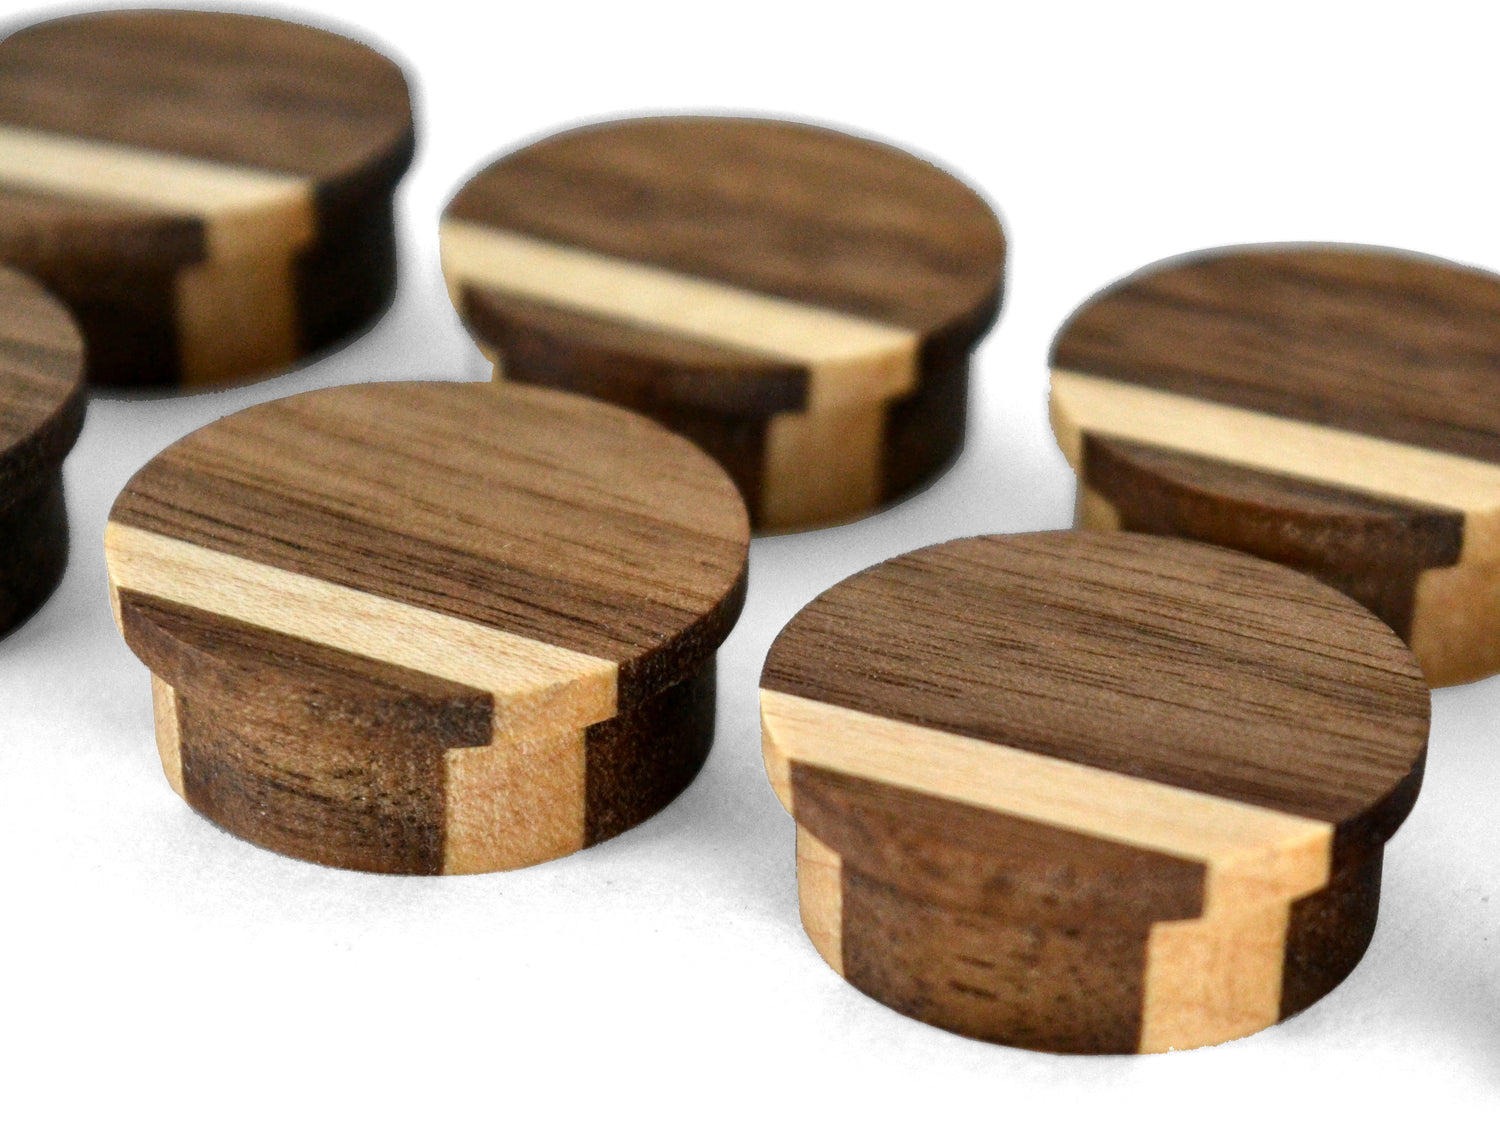 dark wood grain round magnets